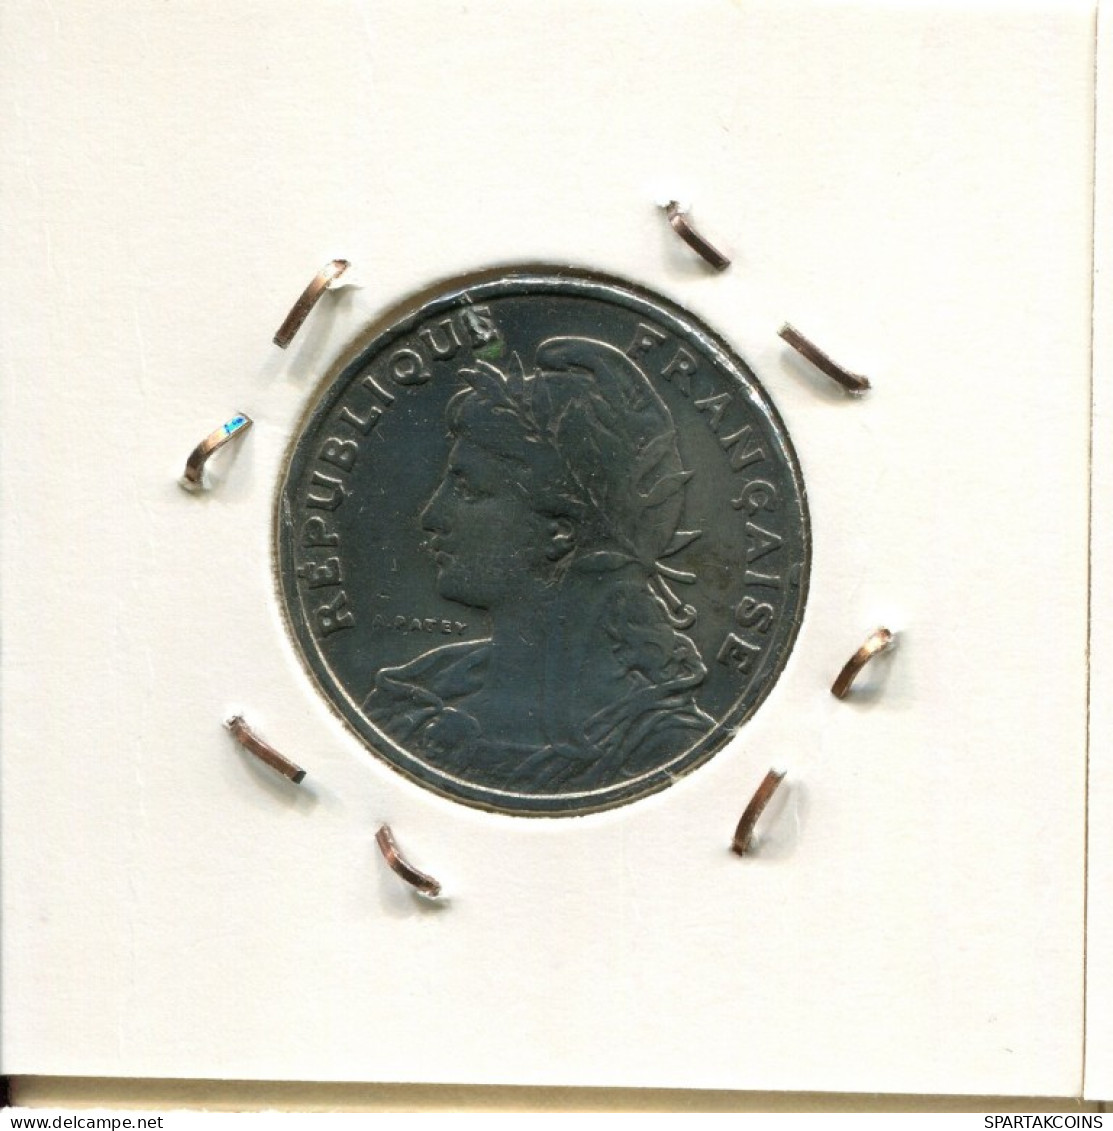 25 CENTIMES 1903 FRANKREICH FRANCE Französisch Münze #AM195.D.A - 25 Centimes